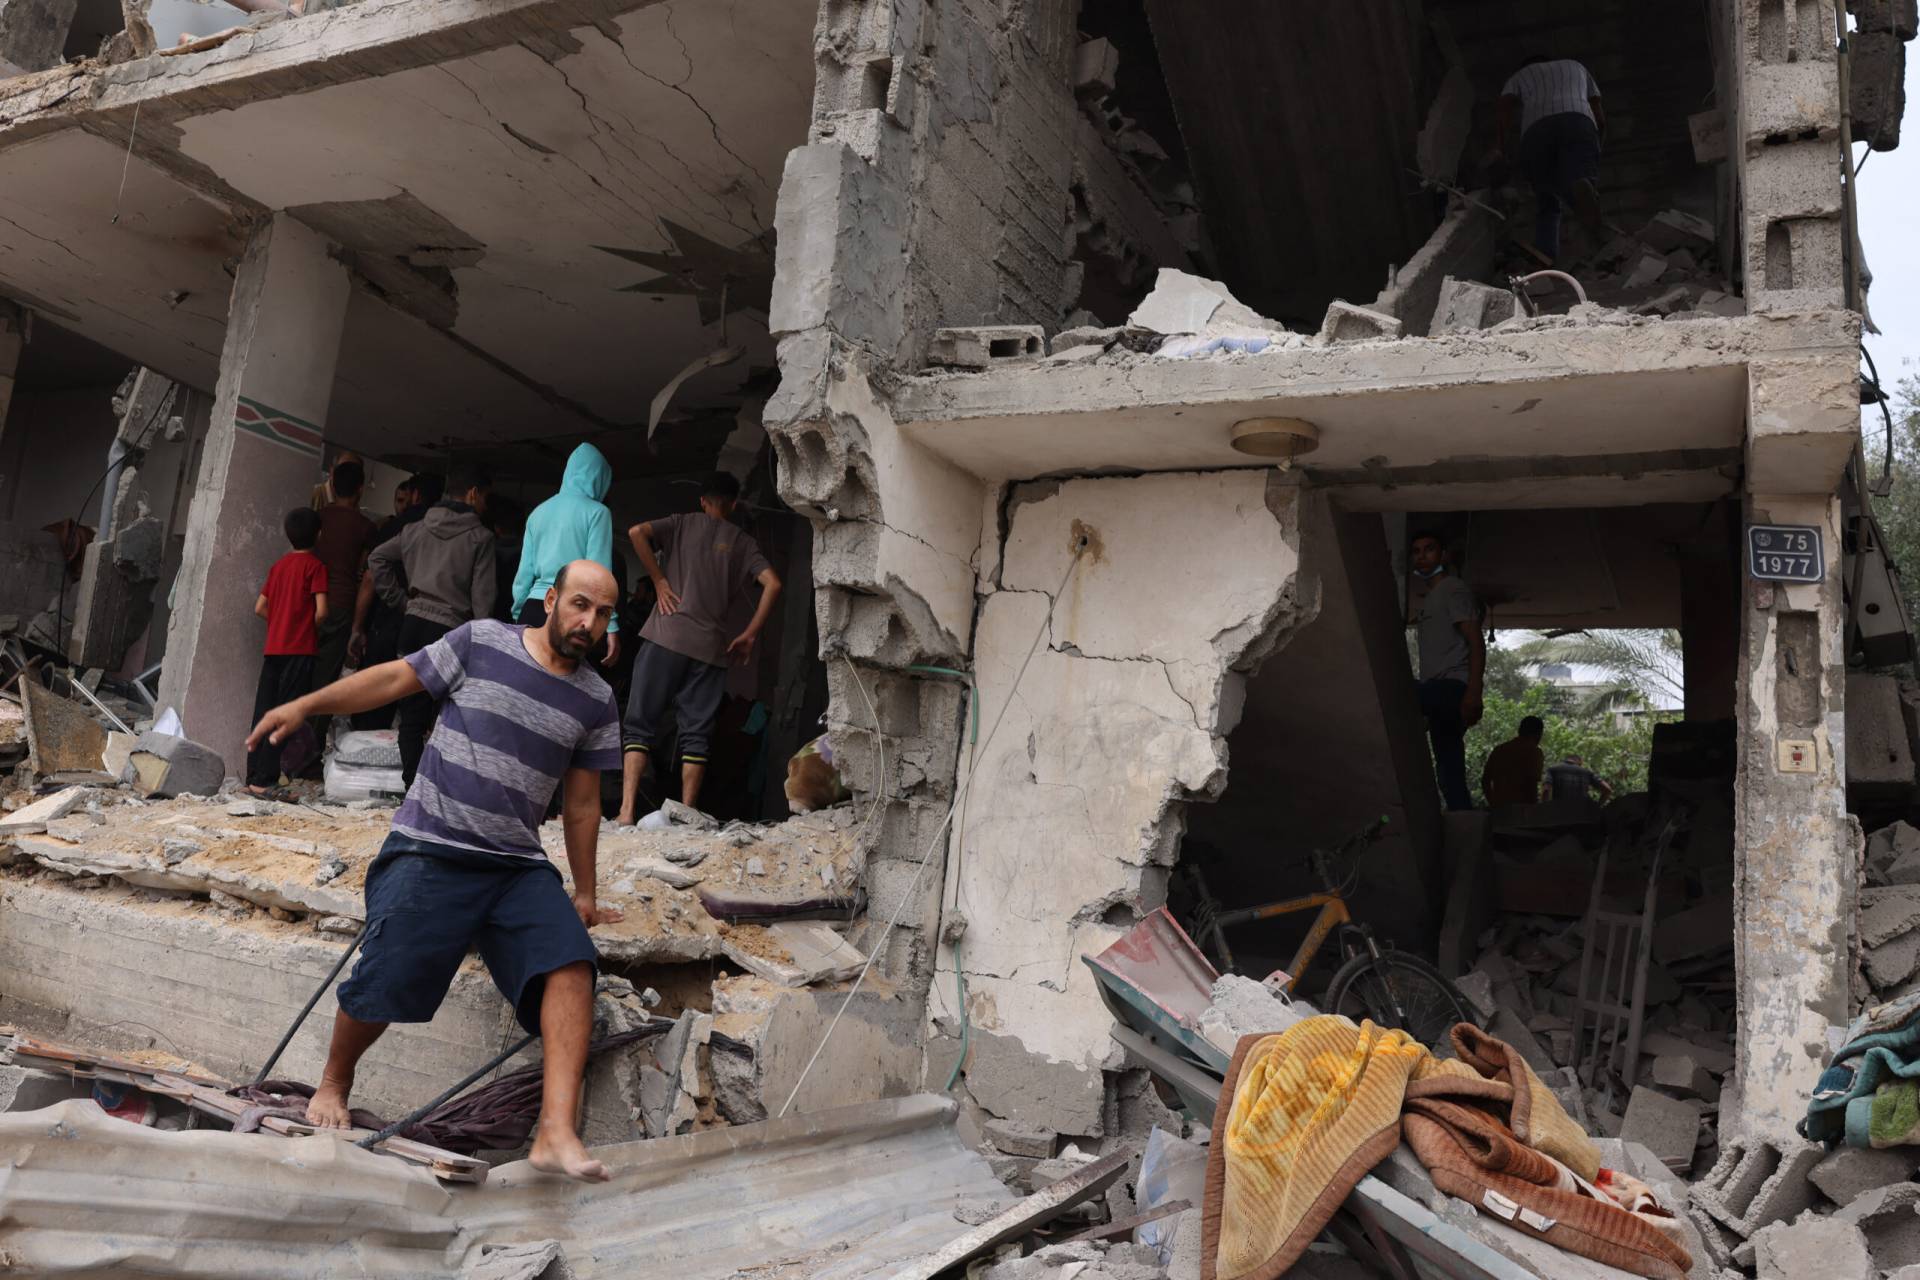 Υπ. Άμυνας Ισραήλ: Η Χαμάς «χειραγωγεί ψυχολογικά» τους Ισραηλινούς πολίτες εκμεταλλευόμενη το θέμα των ομήρων